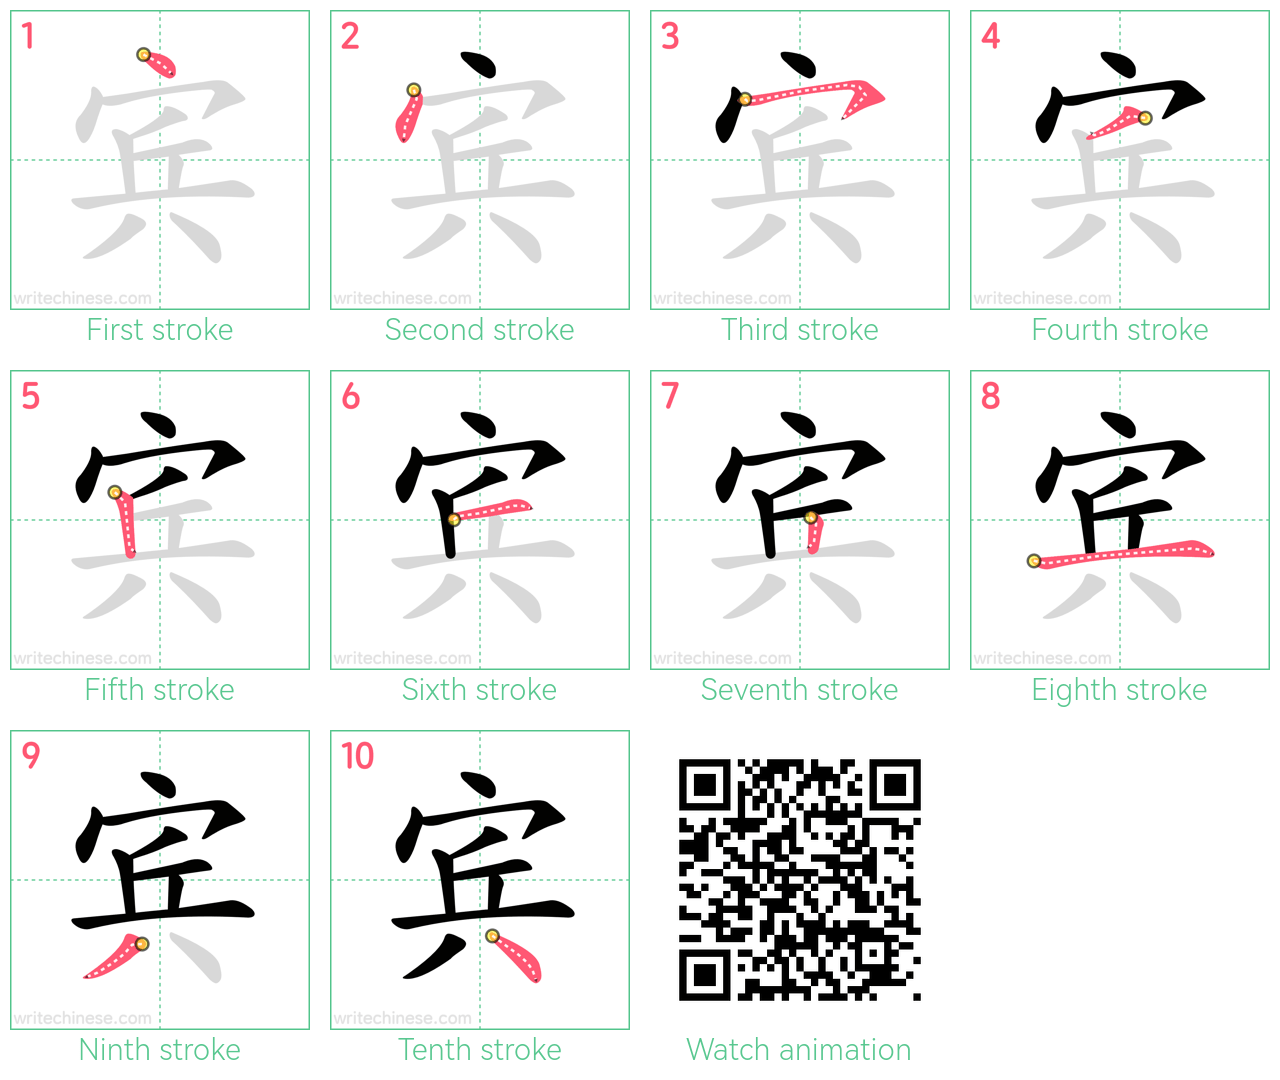 宾 step-by-step stroke order diagrams